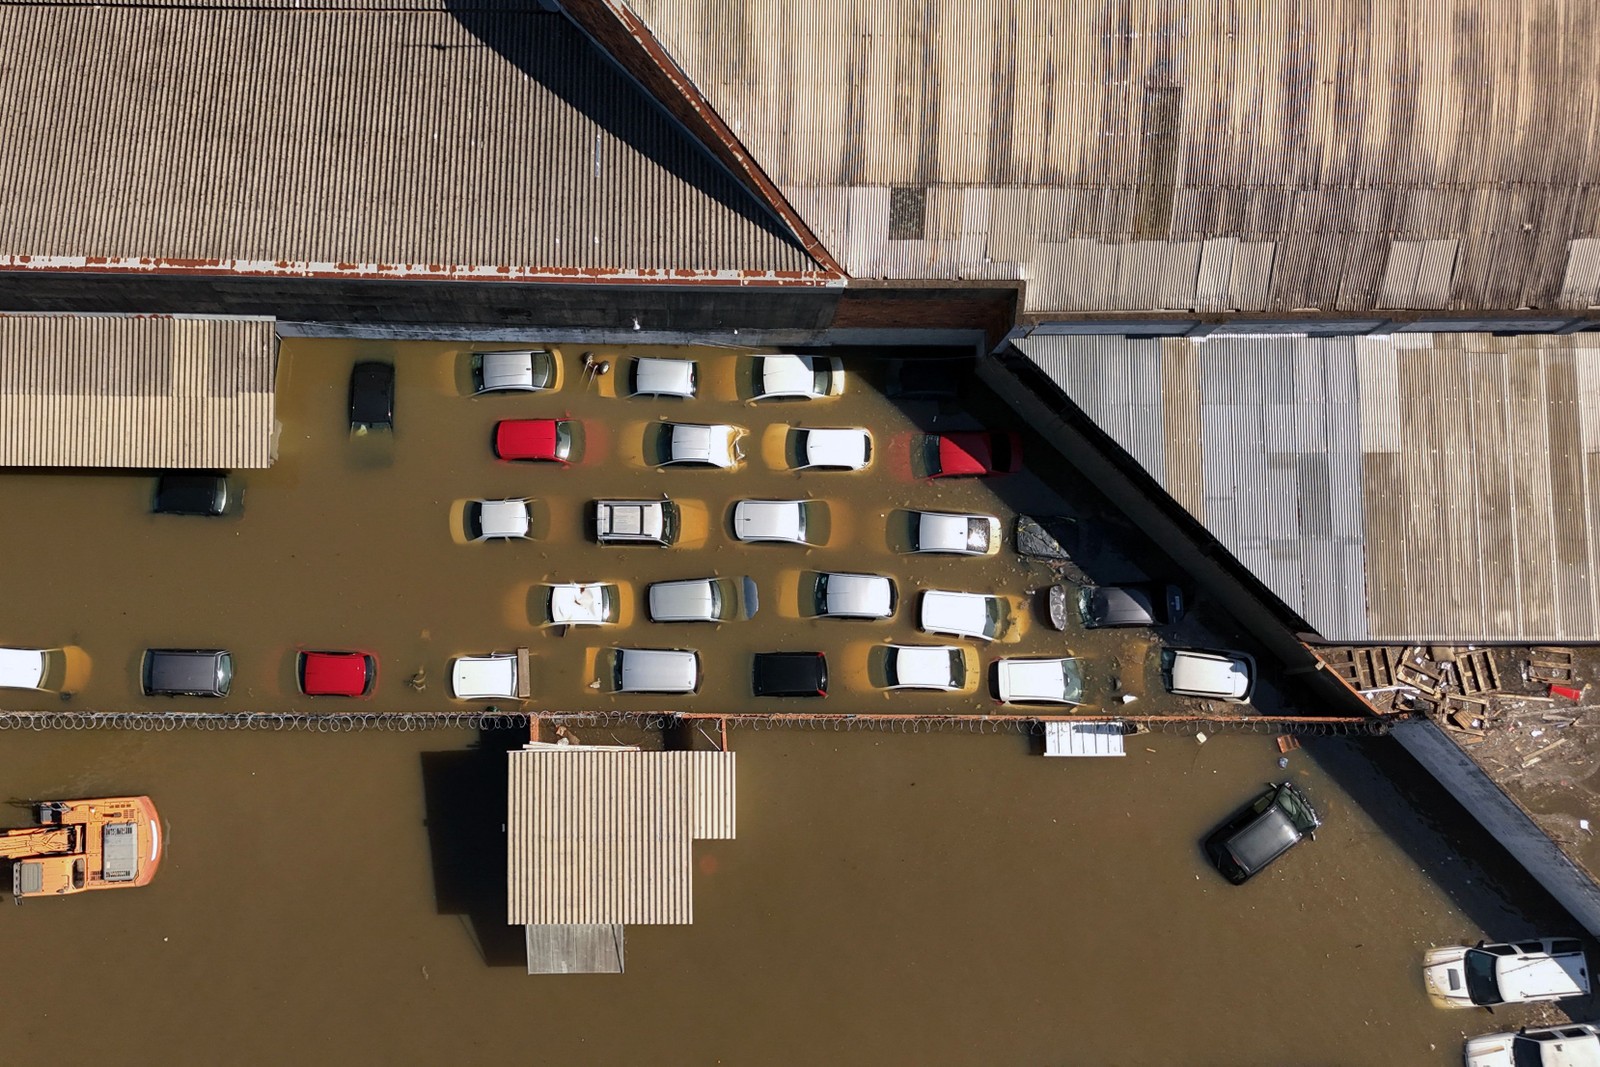 Vista aérea mostra veículos semi-submersos em um estacionamento inundado em Porto Alegre após tempestades torrenciais no sul do Rio Grande do Sul — Foto: Carlos FABAL / AFP